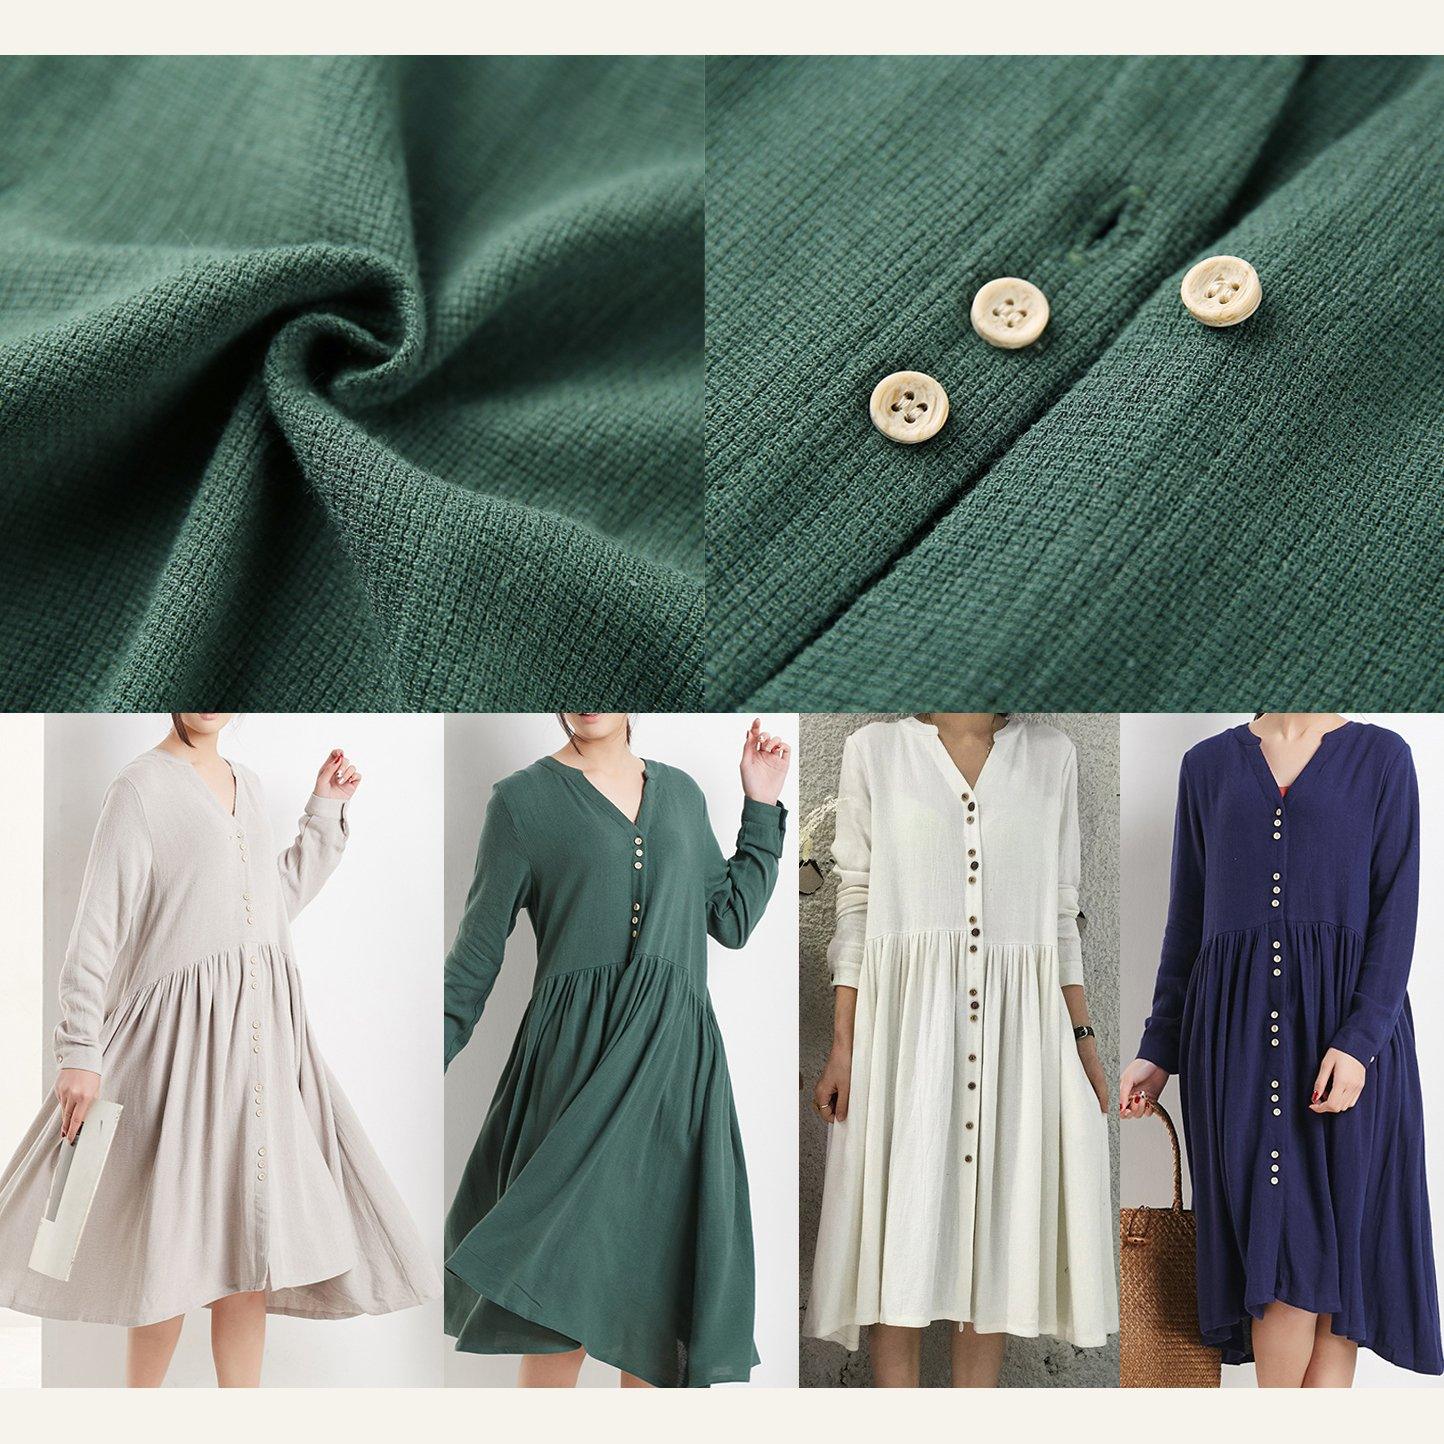 New white linen dress summer dresses plus size linen maxi dress oversize sundresses - Omychic